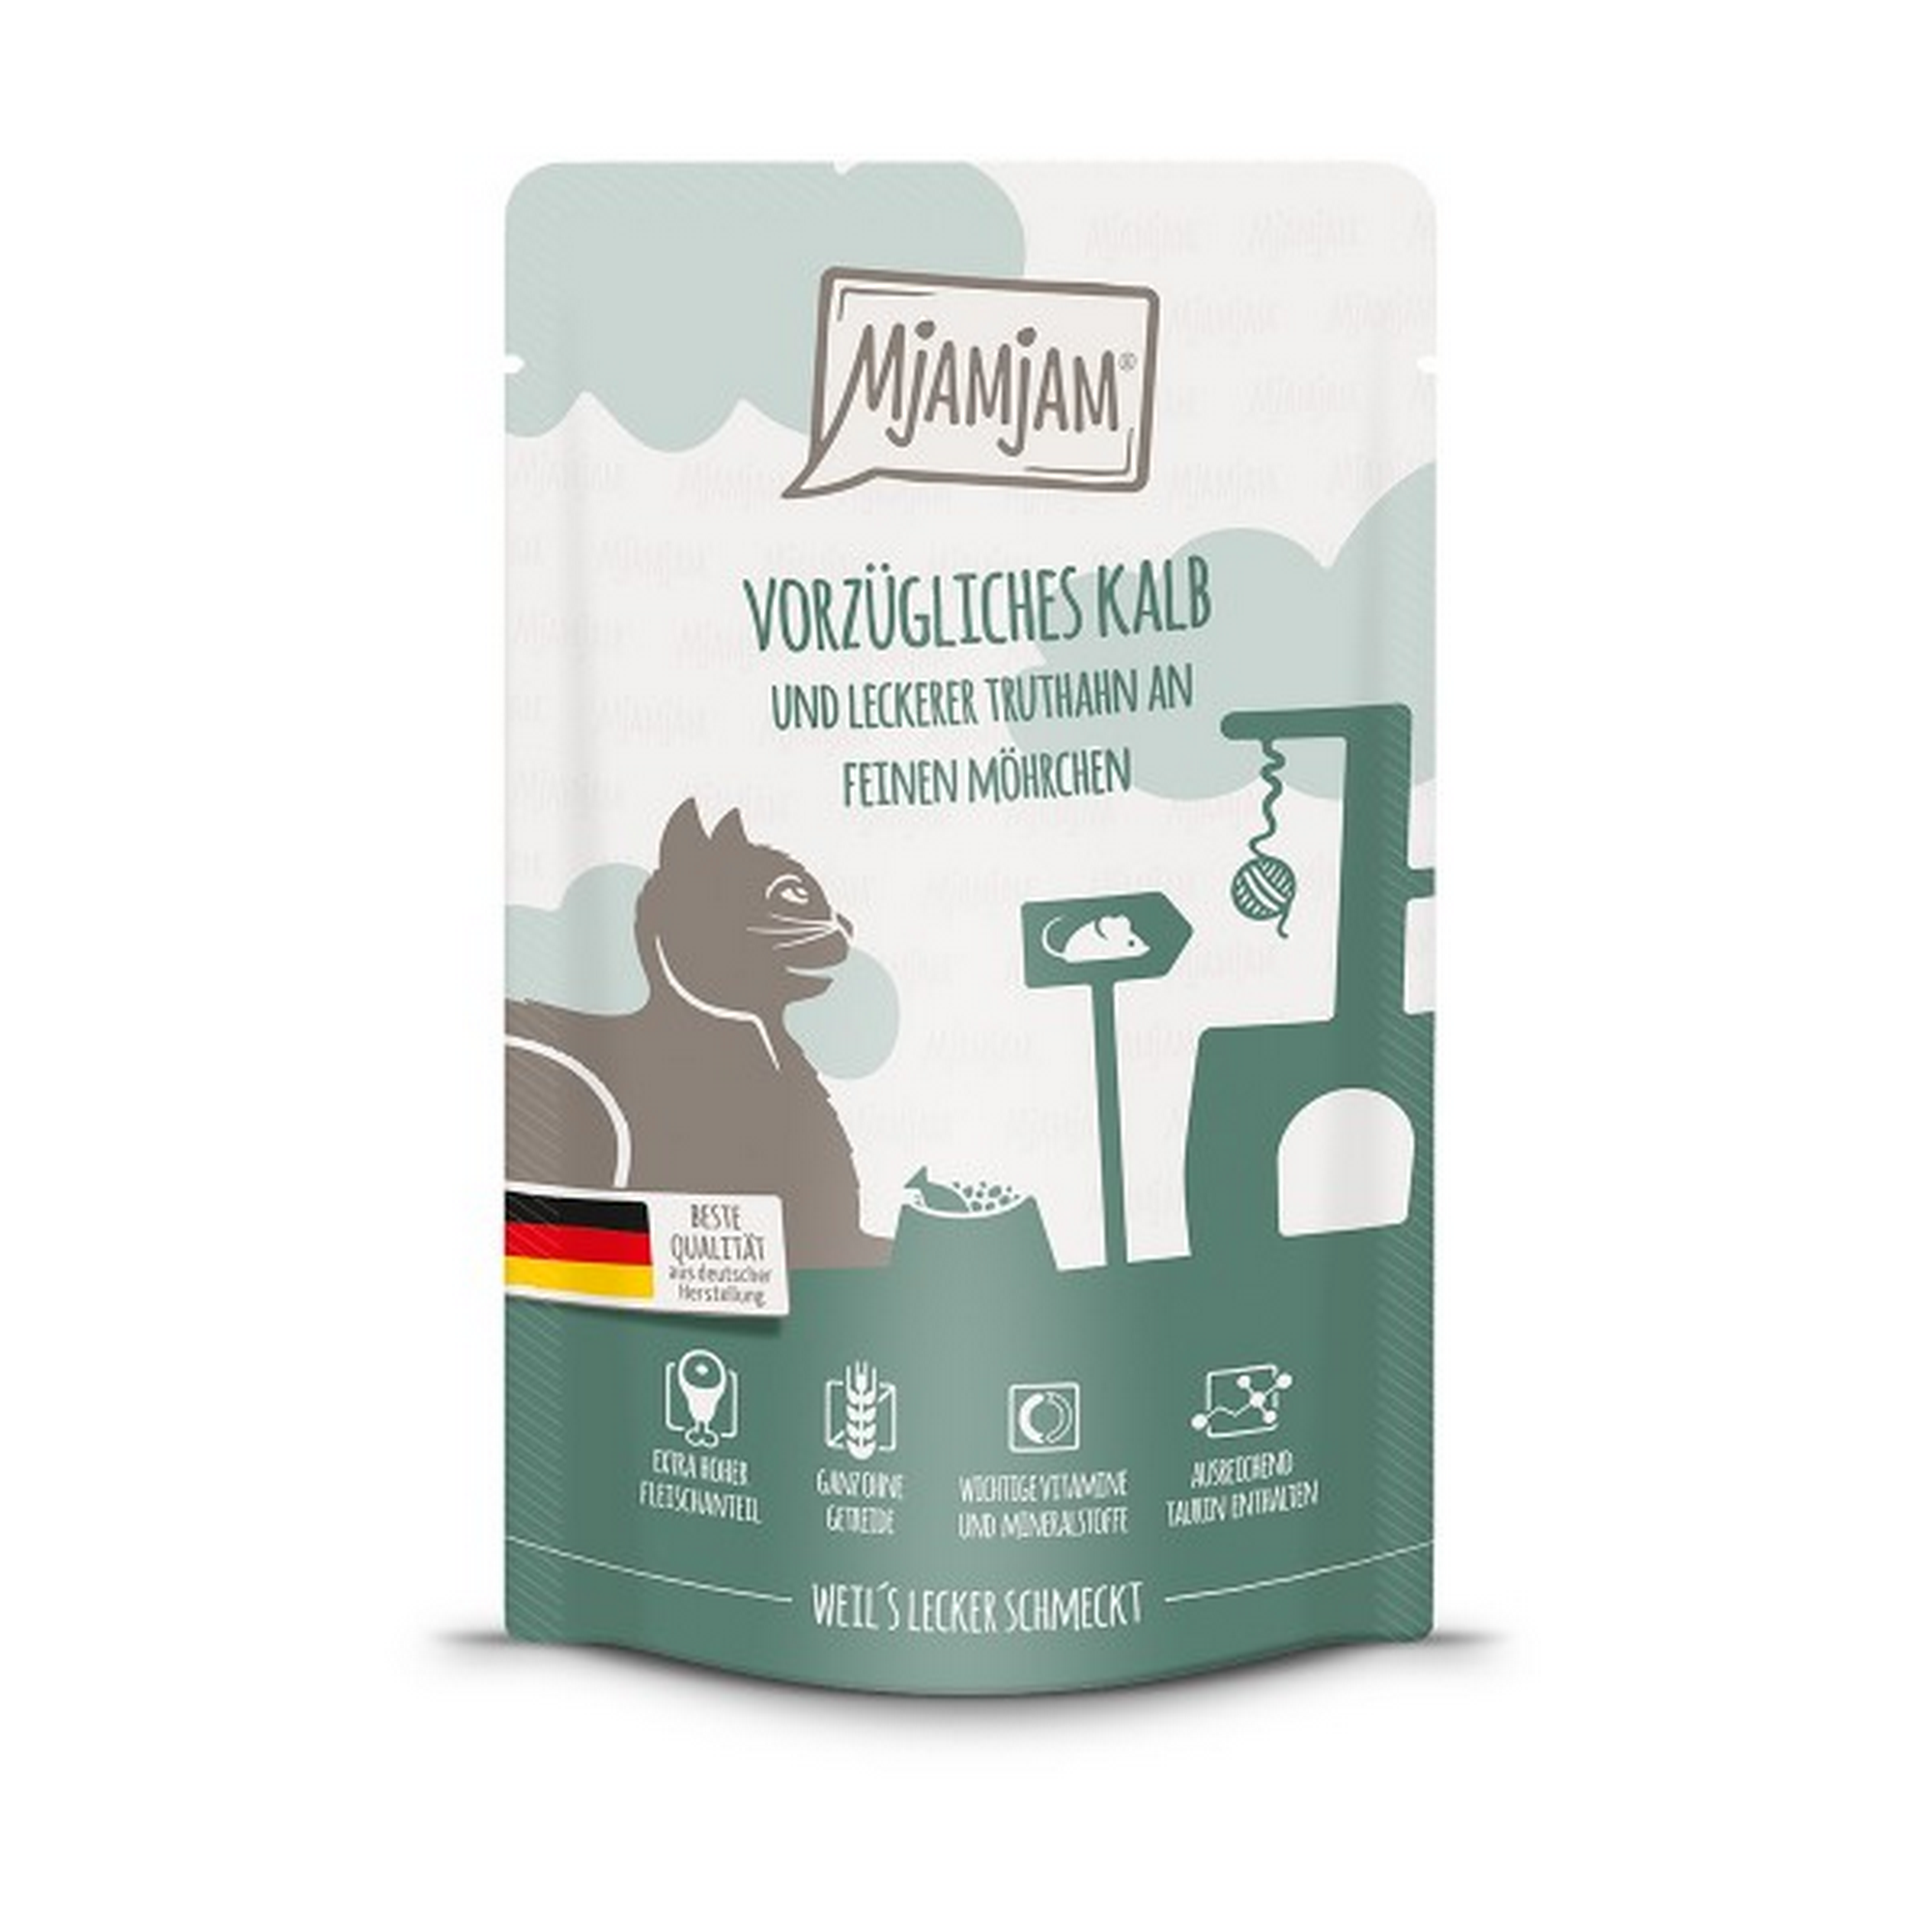 Katzennassfutter 'Quetschie' vorzügliches Kalb & Truthahn an leckeren Möhrchen 125 g + product picture